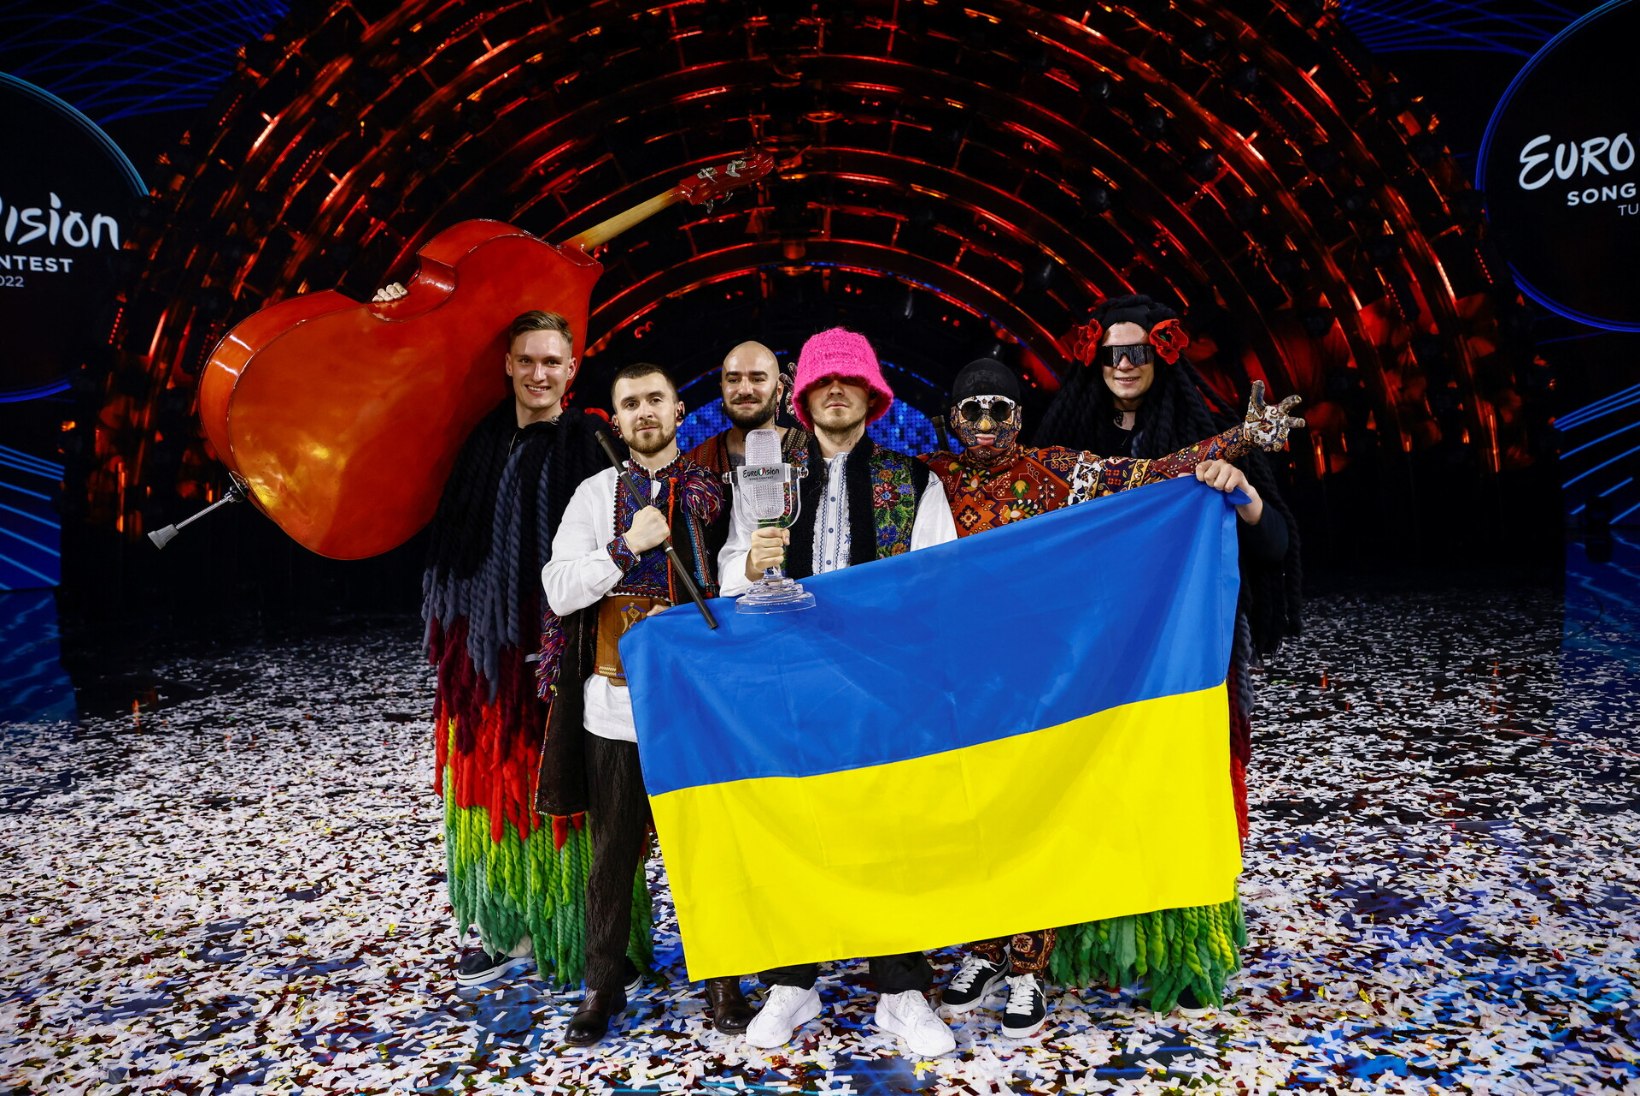 TOHOH! Eurovisioni lauluvõistluse hääletussüsteem läbib olulise muutuse